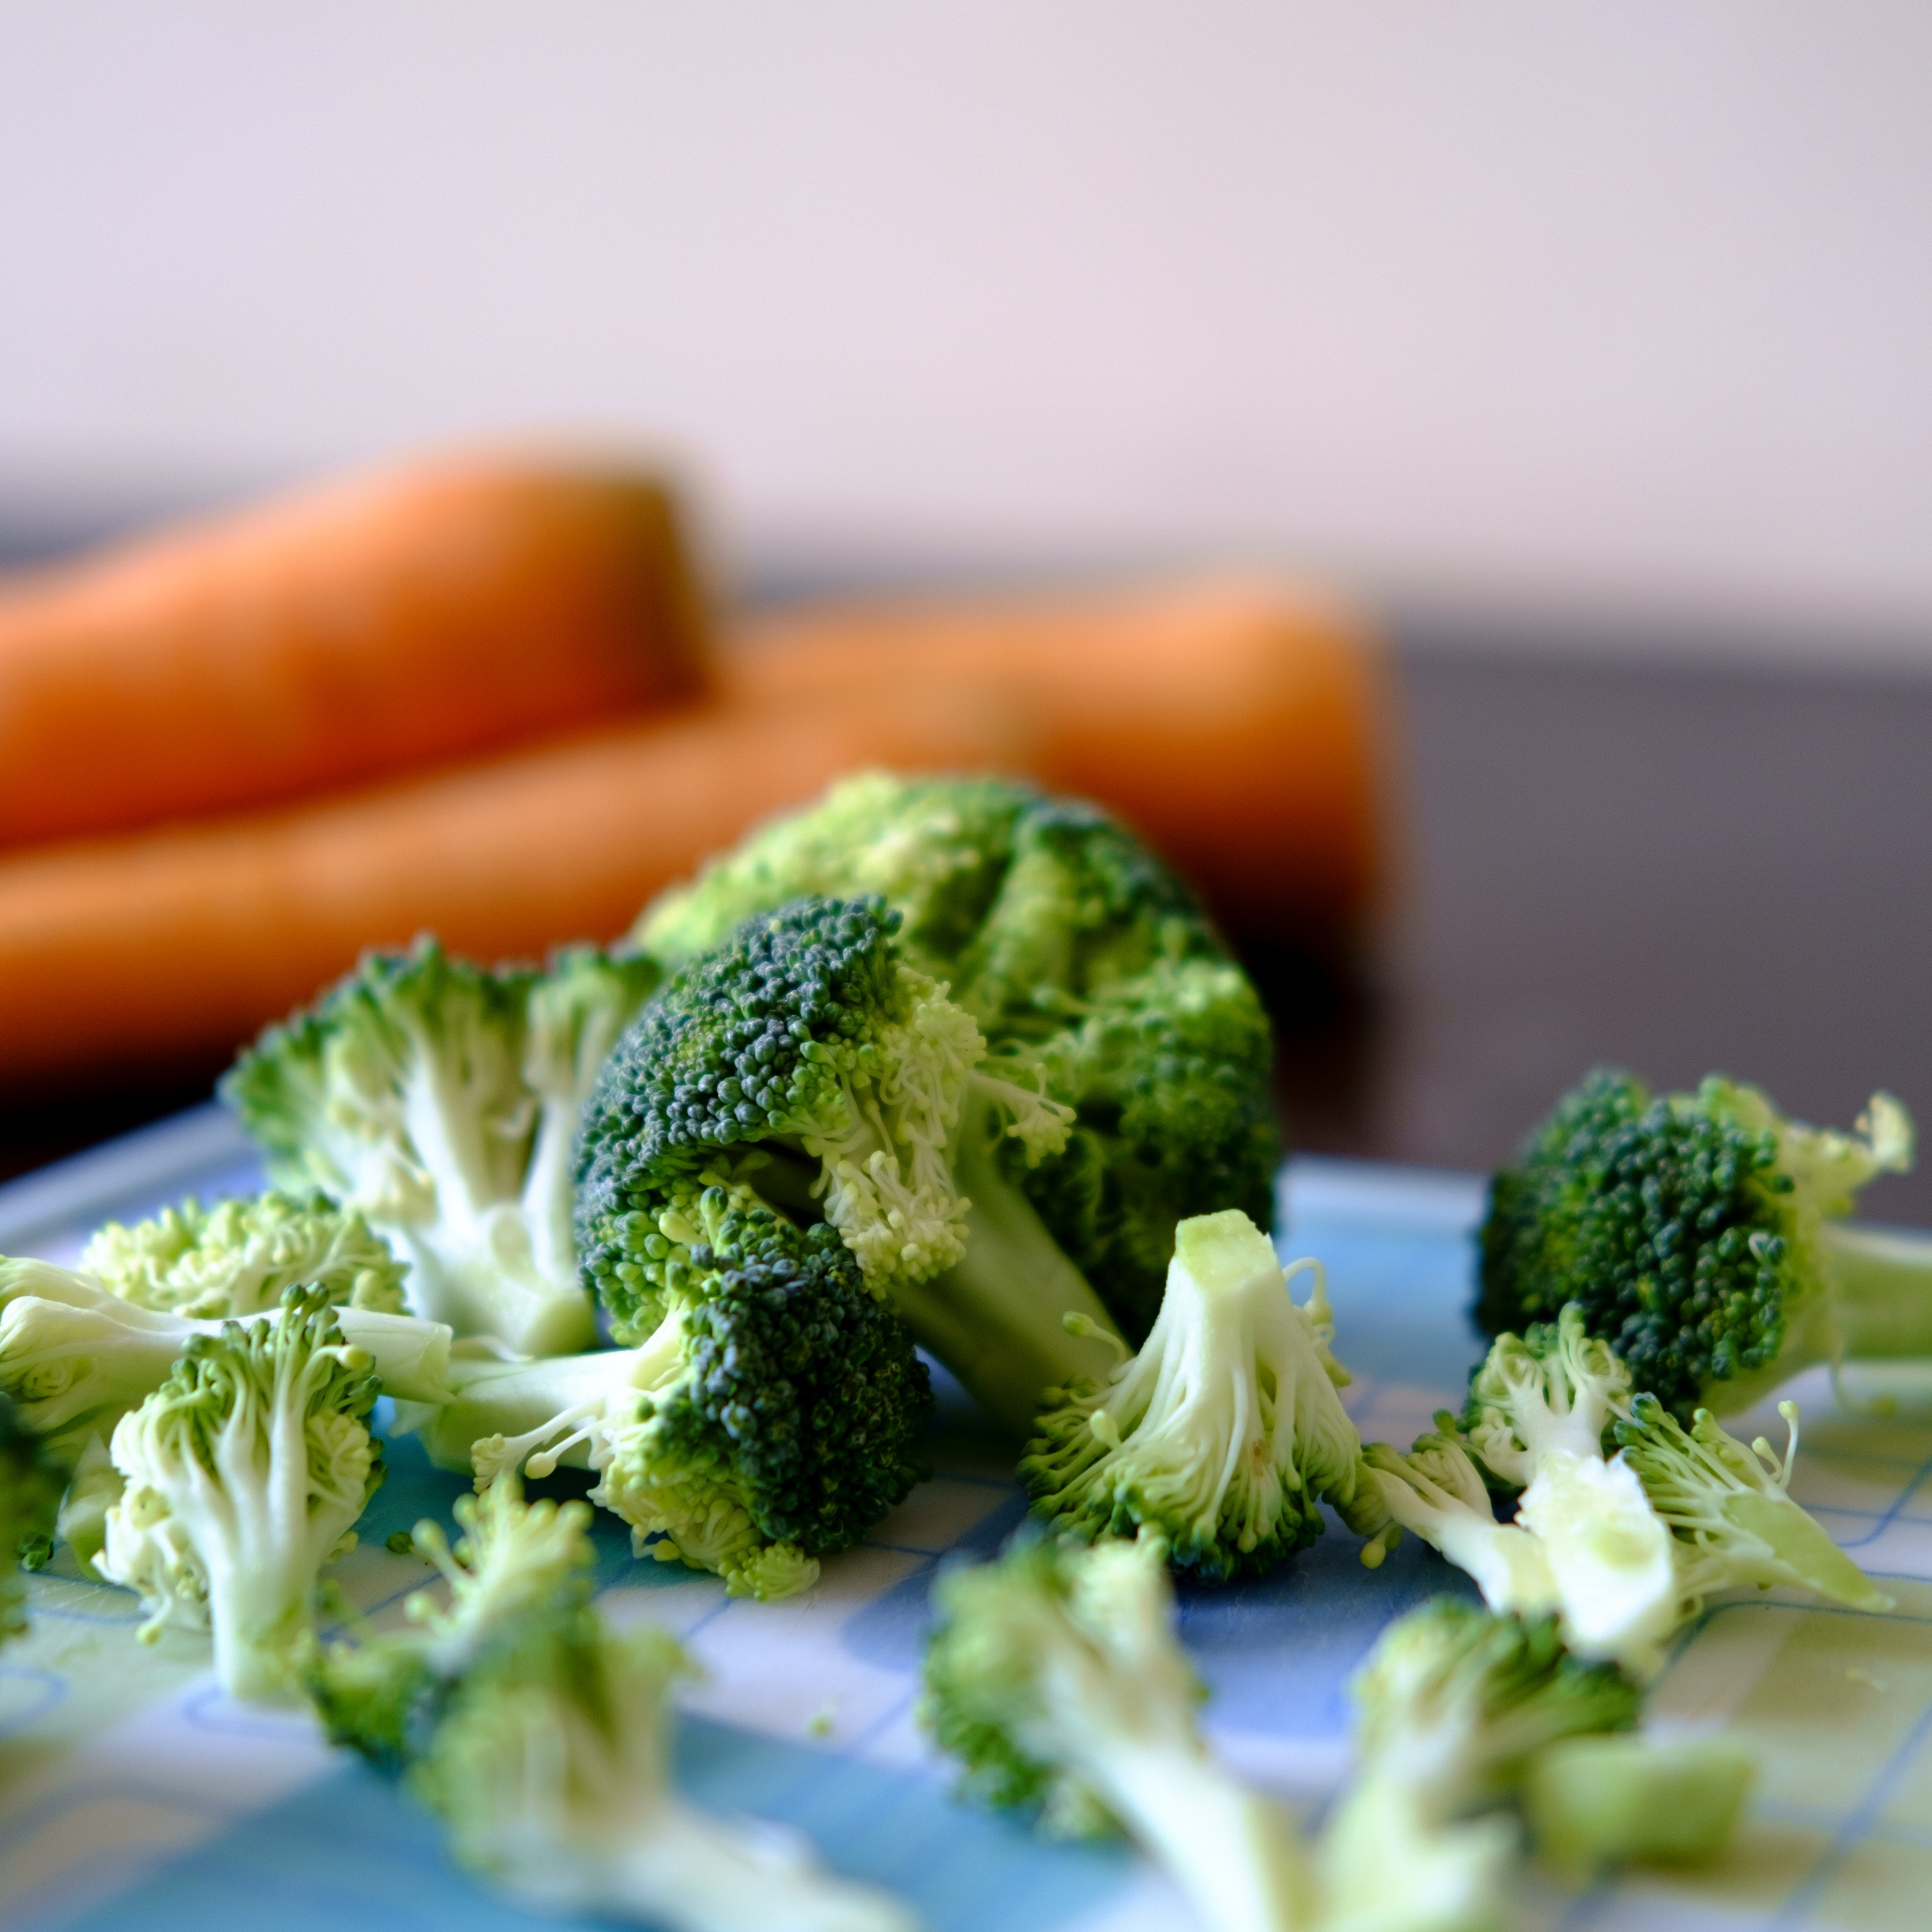 Broccolisalat er oplagt til madpakken